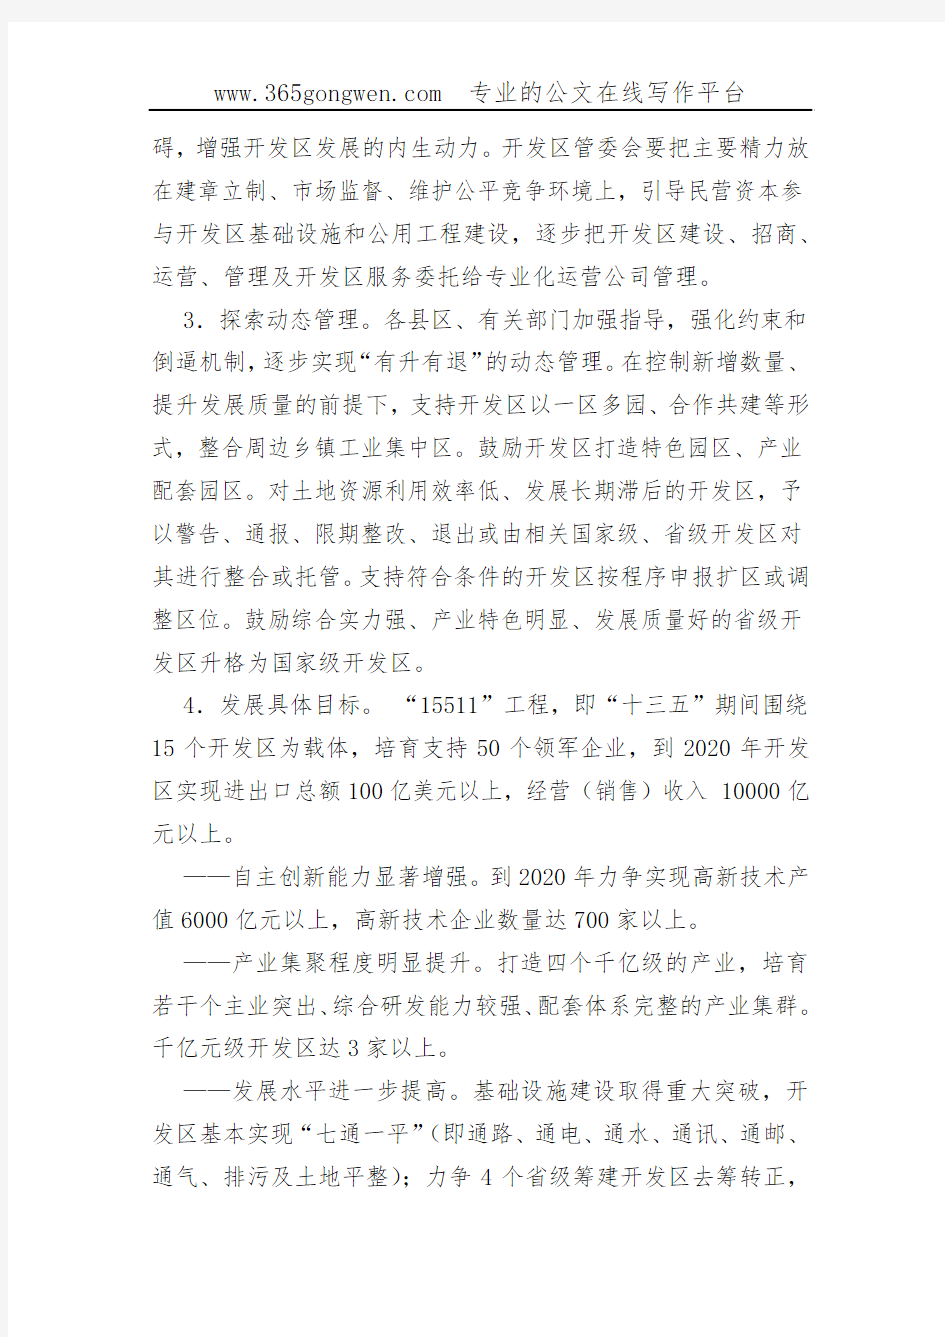 【发改意见】芜湖市关于加快开发区转型升级创新发展的实施意见